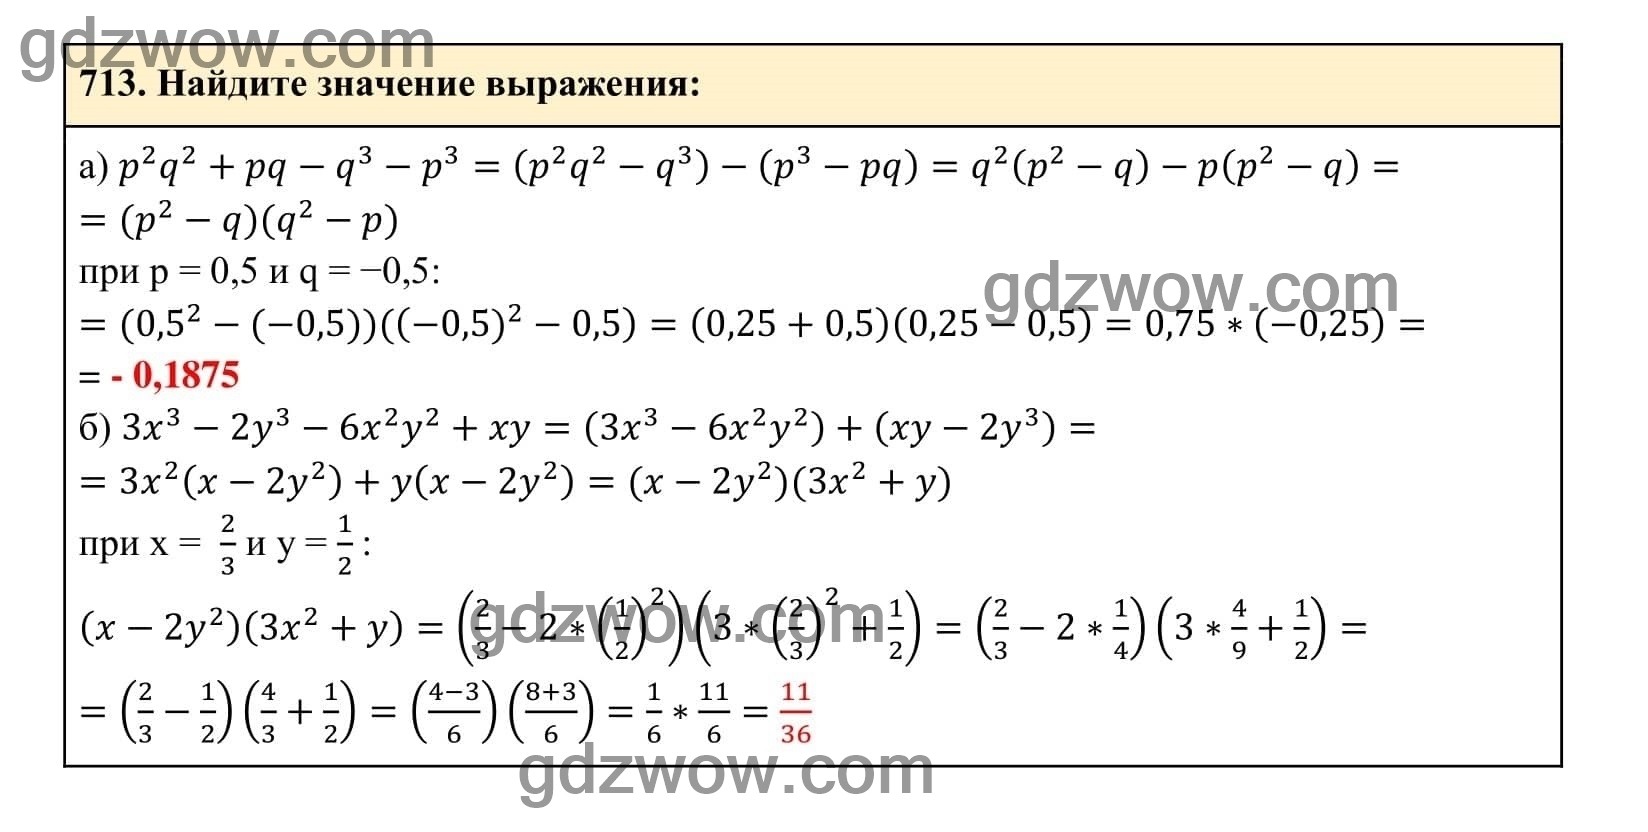 Упражнение 713 - ГДЗ по Алгебре 7 класс Учебник Макарычев (решебник) - GDZwow